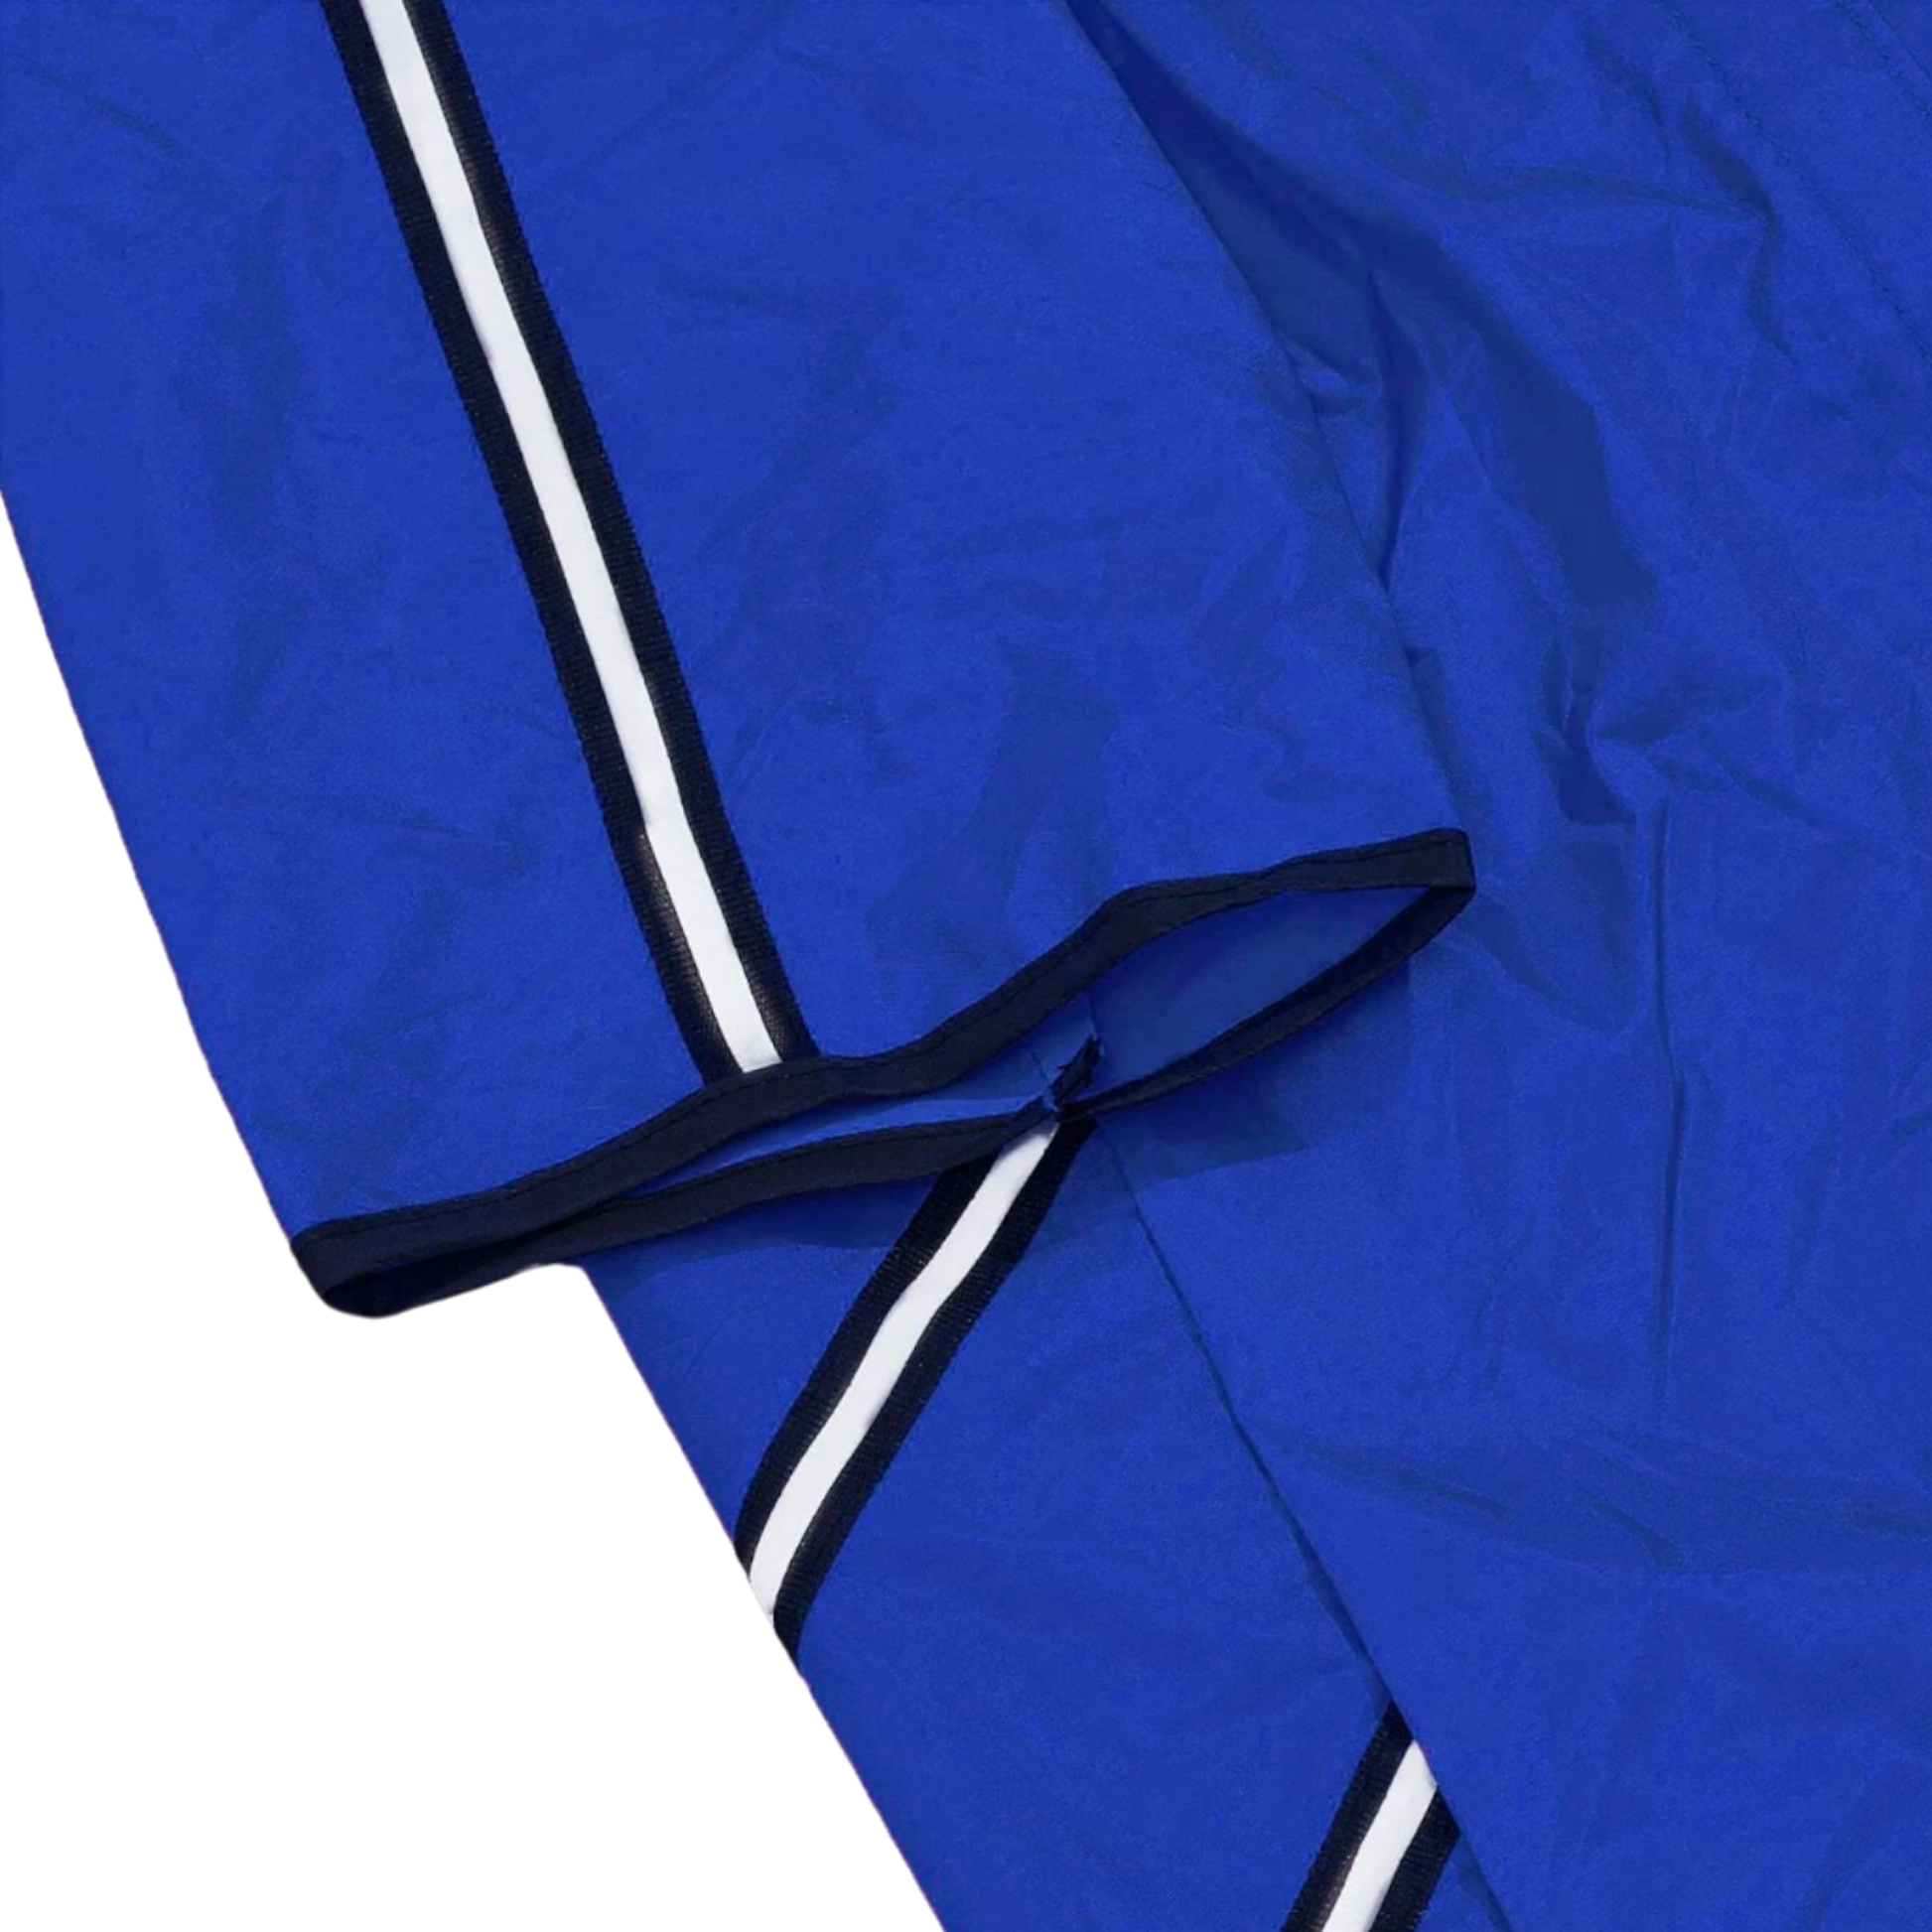 manteau imperméable pluie chien bandes réfléchissantes bleu twiggy